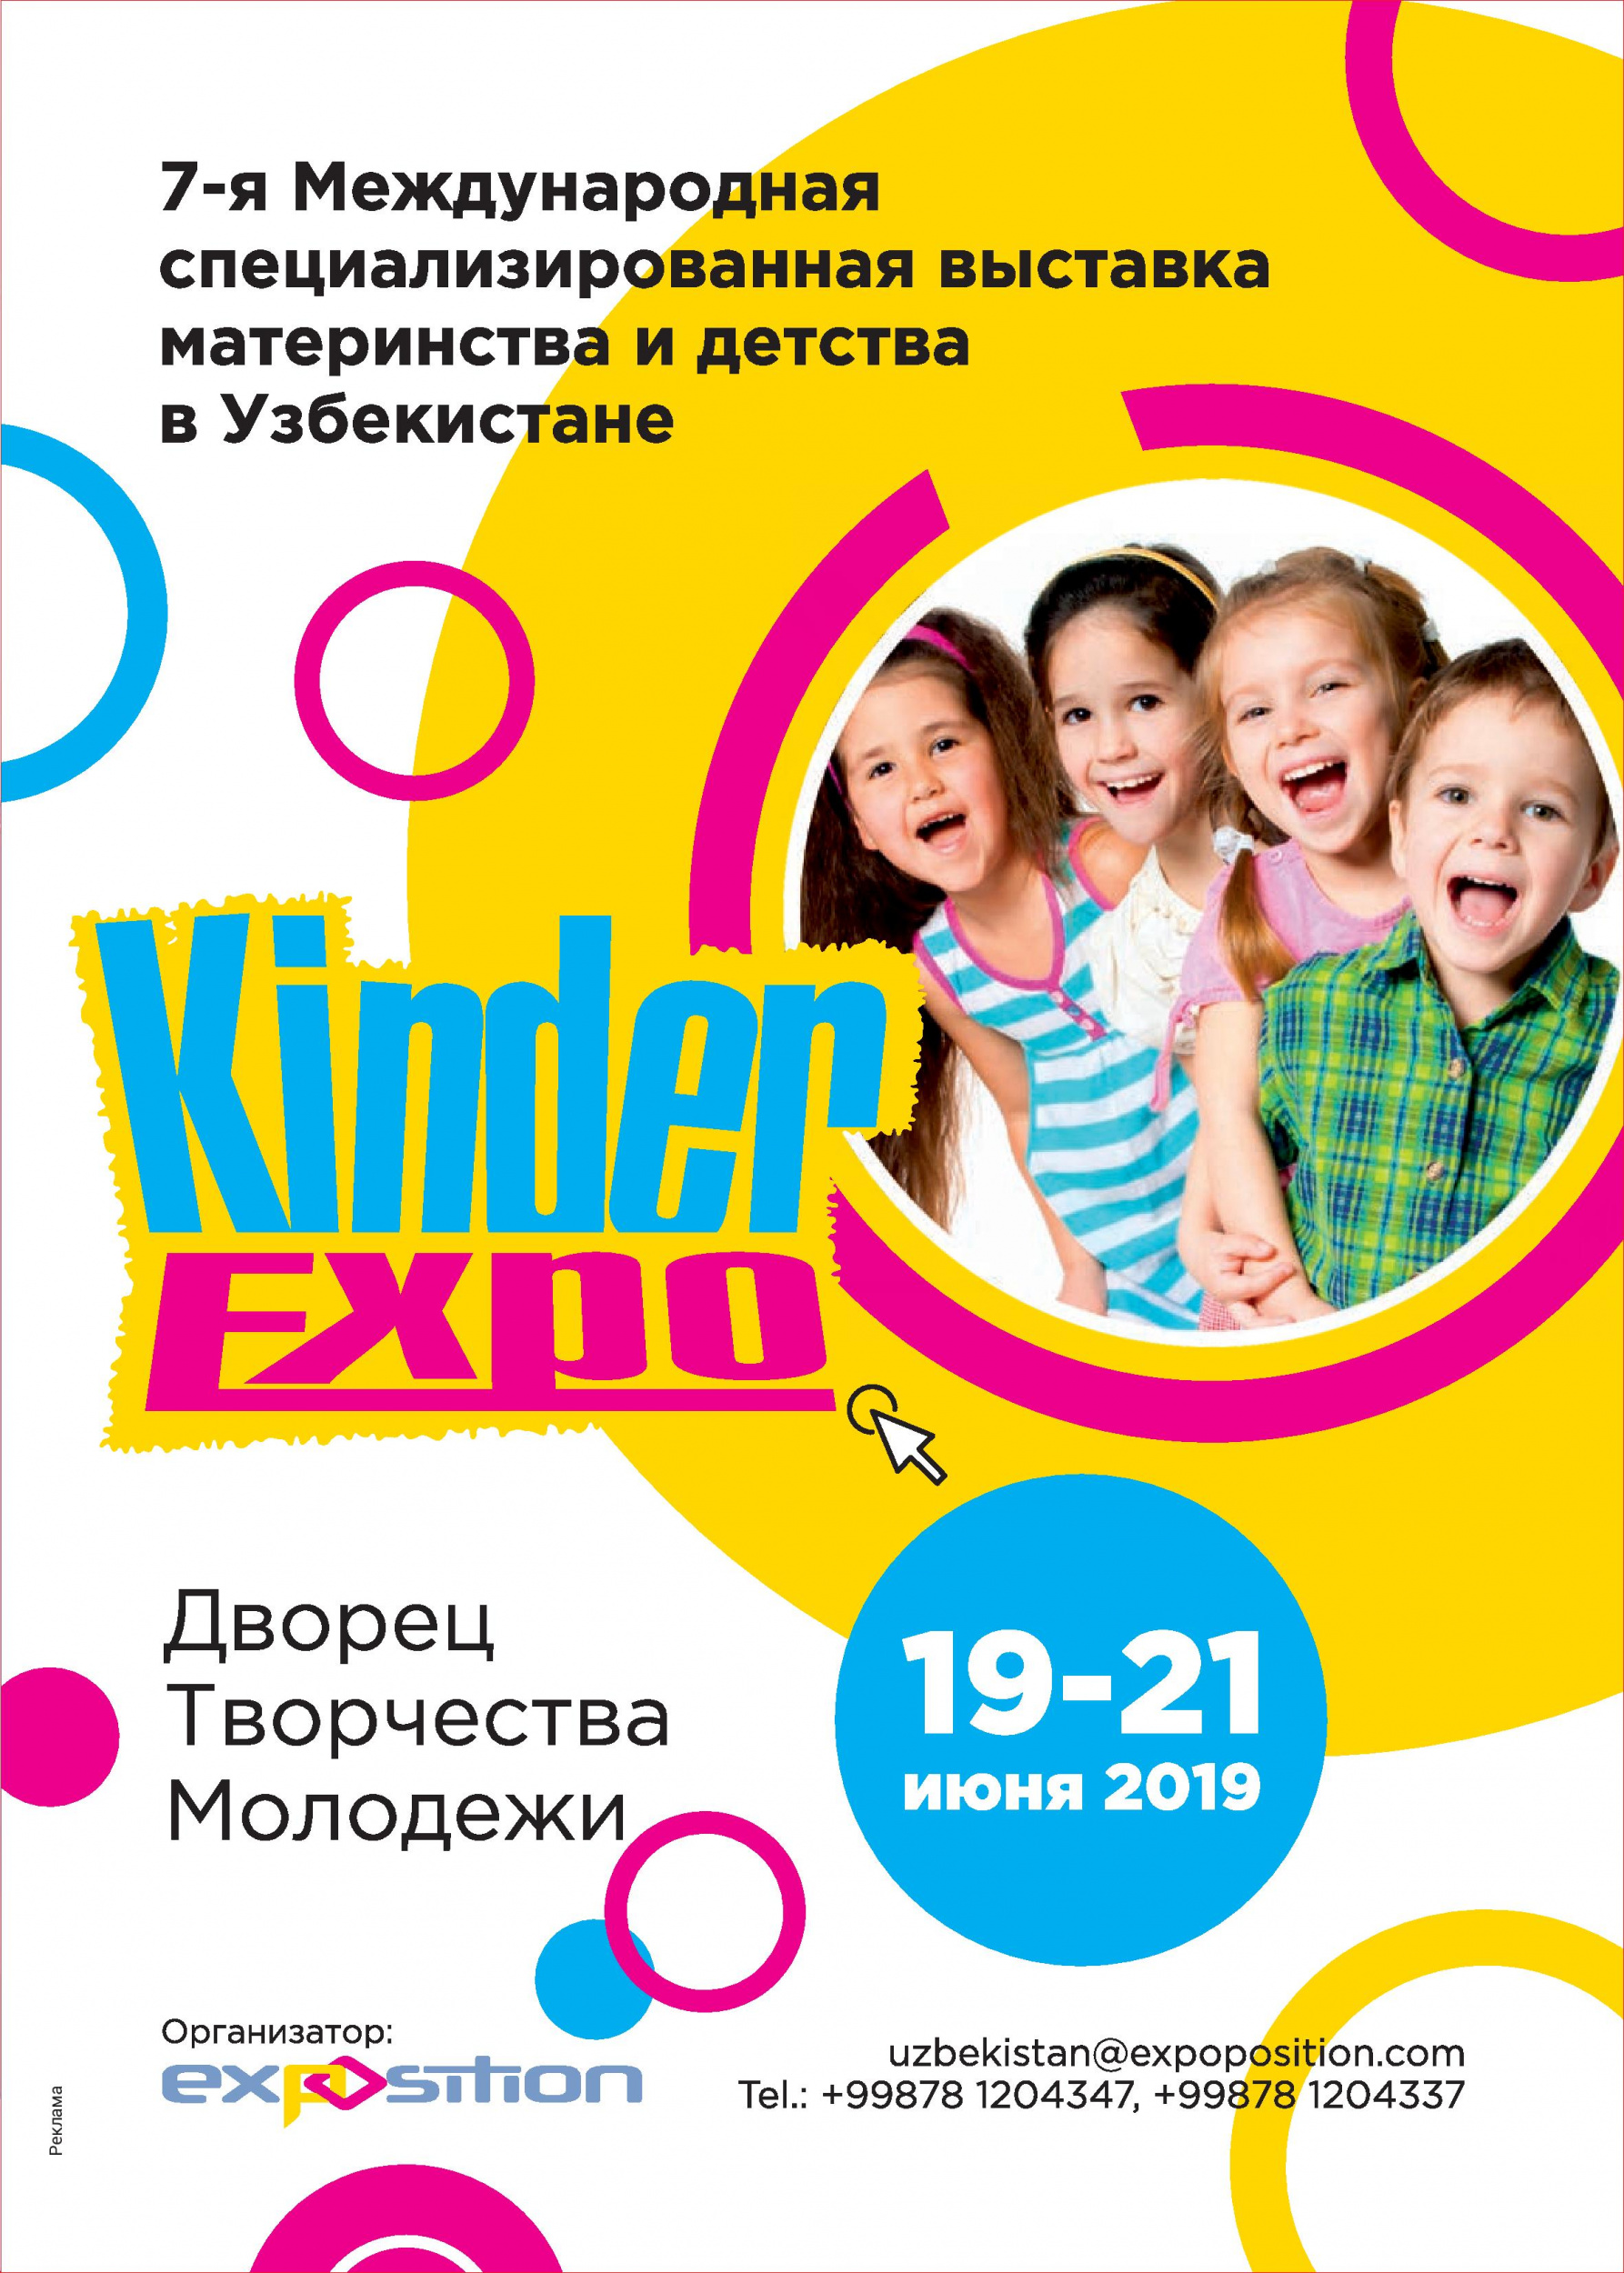 "KINDER EXPO" Узбекистан